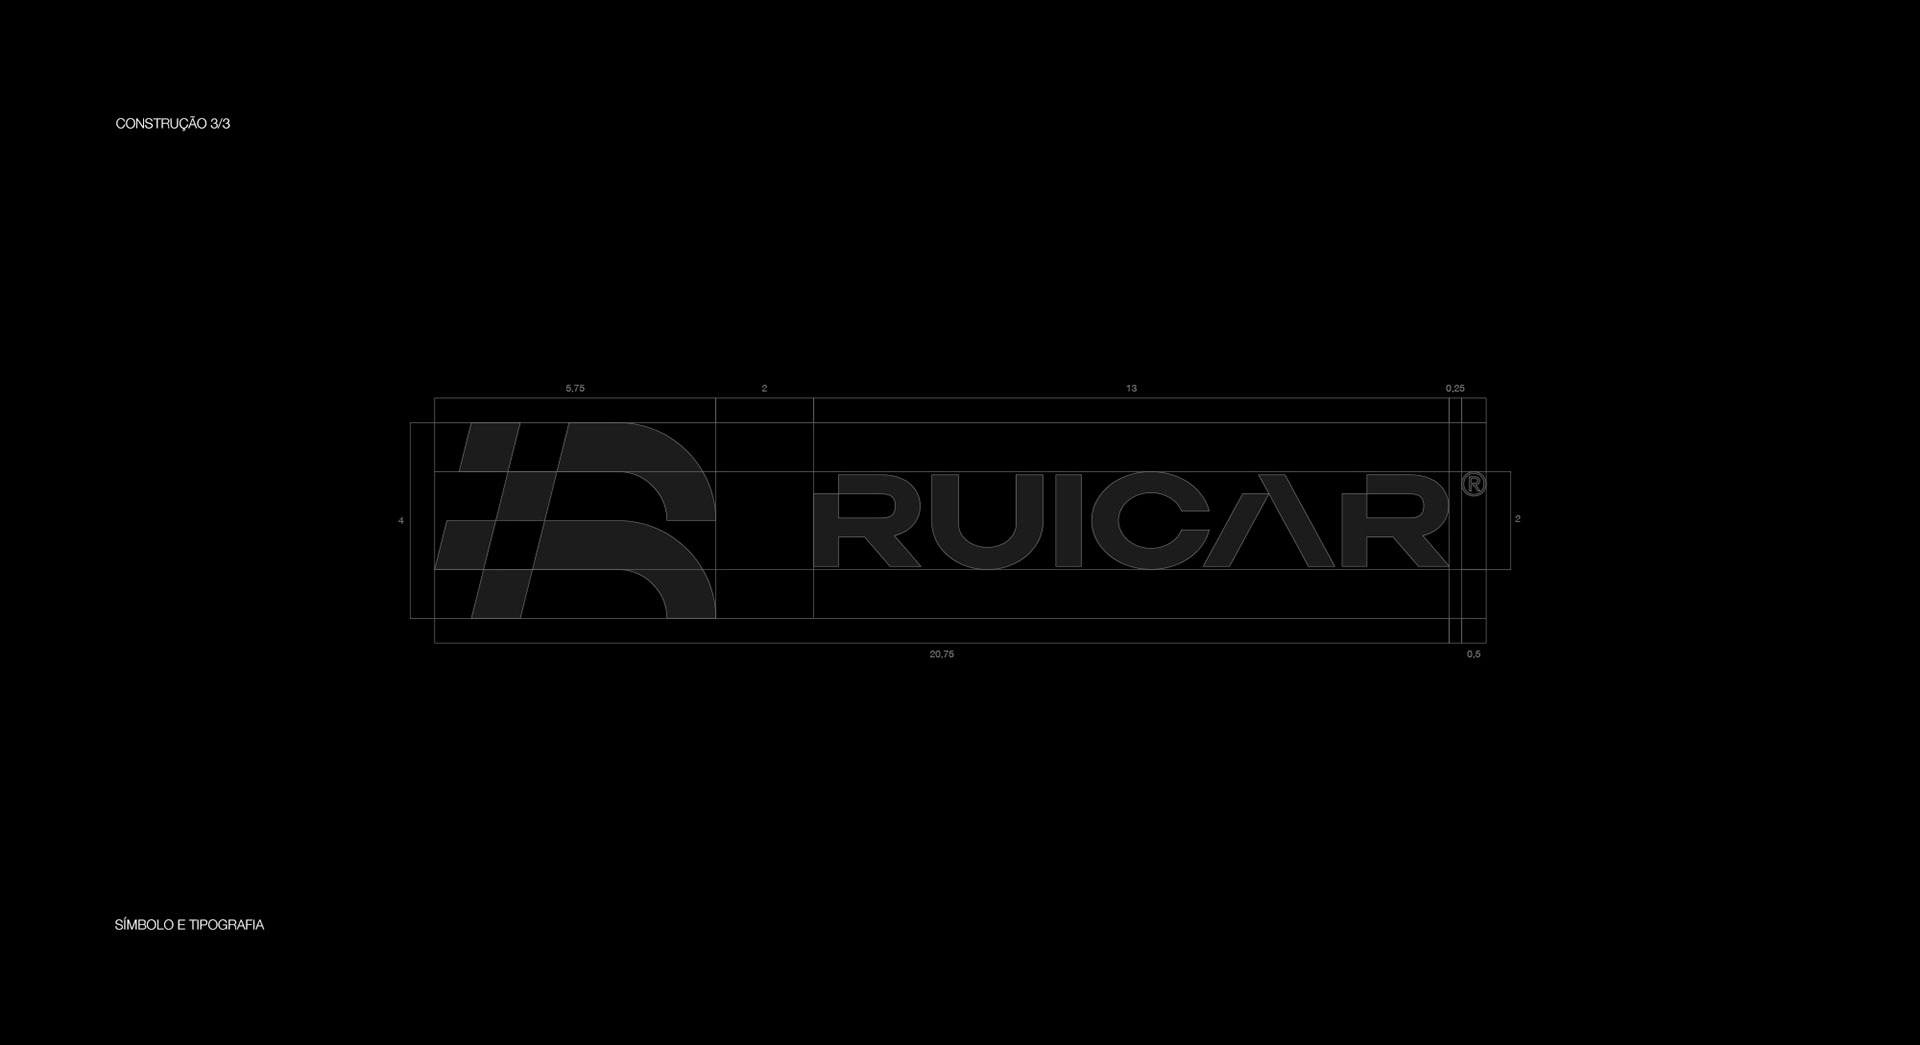 汽车,视觉识别,VI . 巴西Ruicar豪华汽车店品牌视觉识别设计